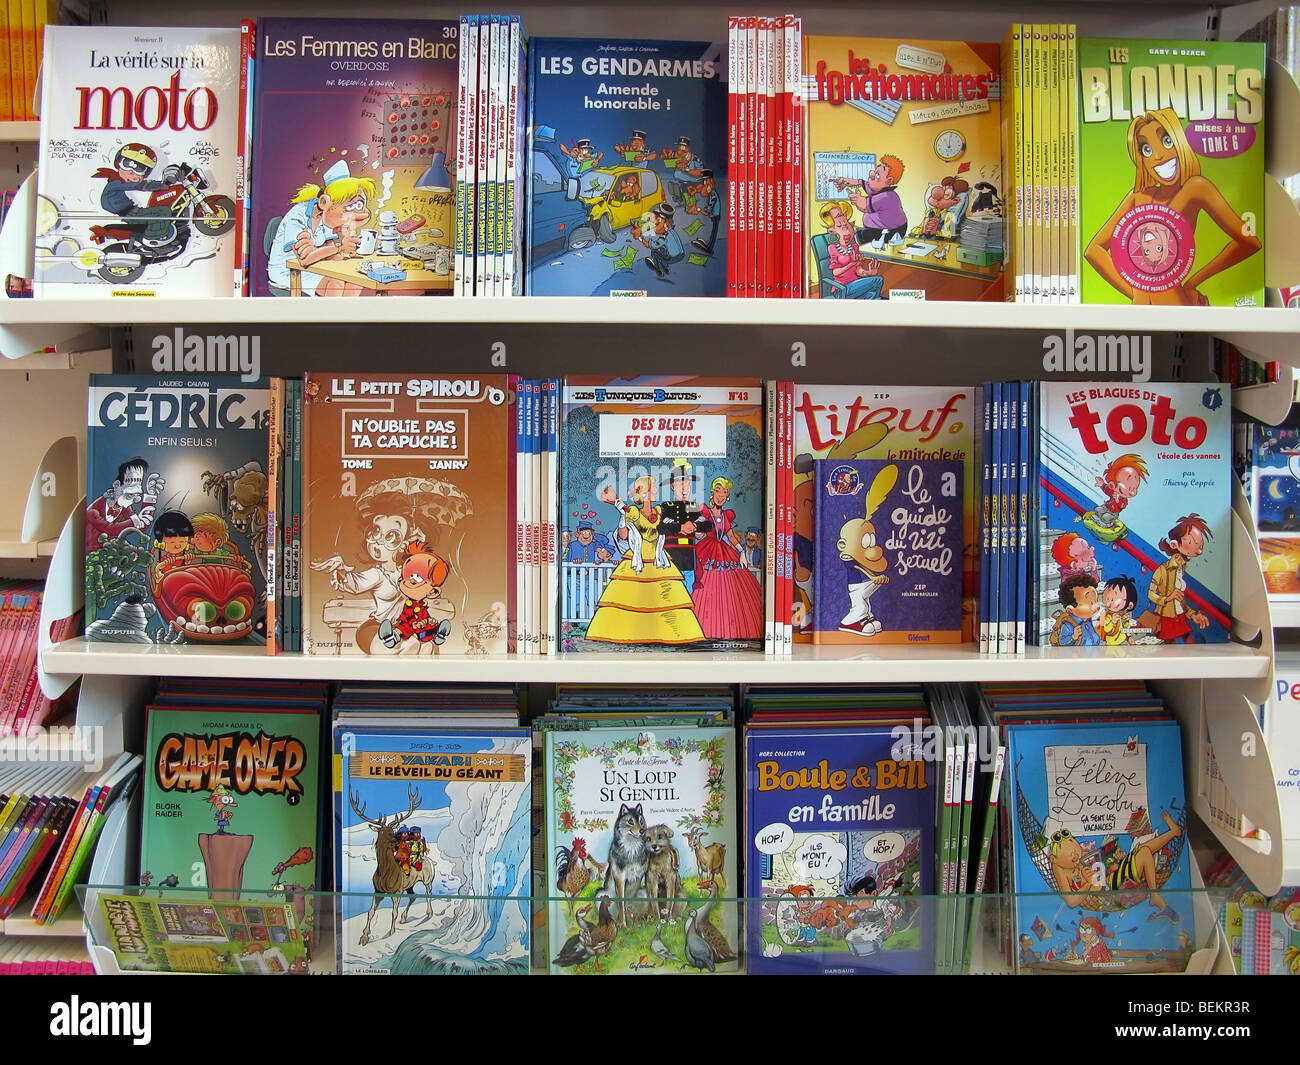 Bandes dessinees libri in un supermercato francese Foto Stock